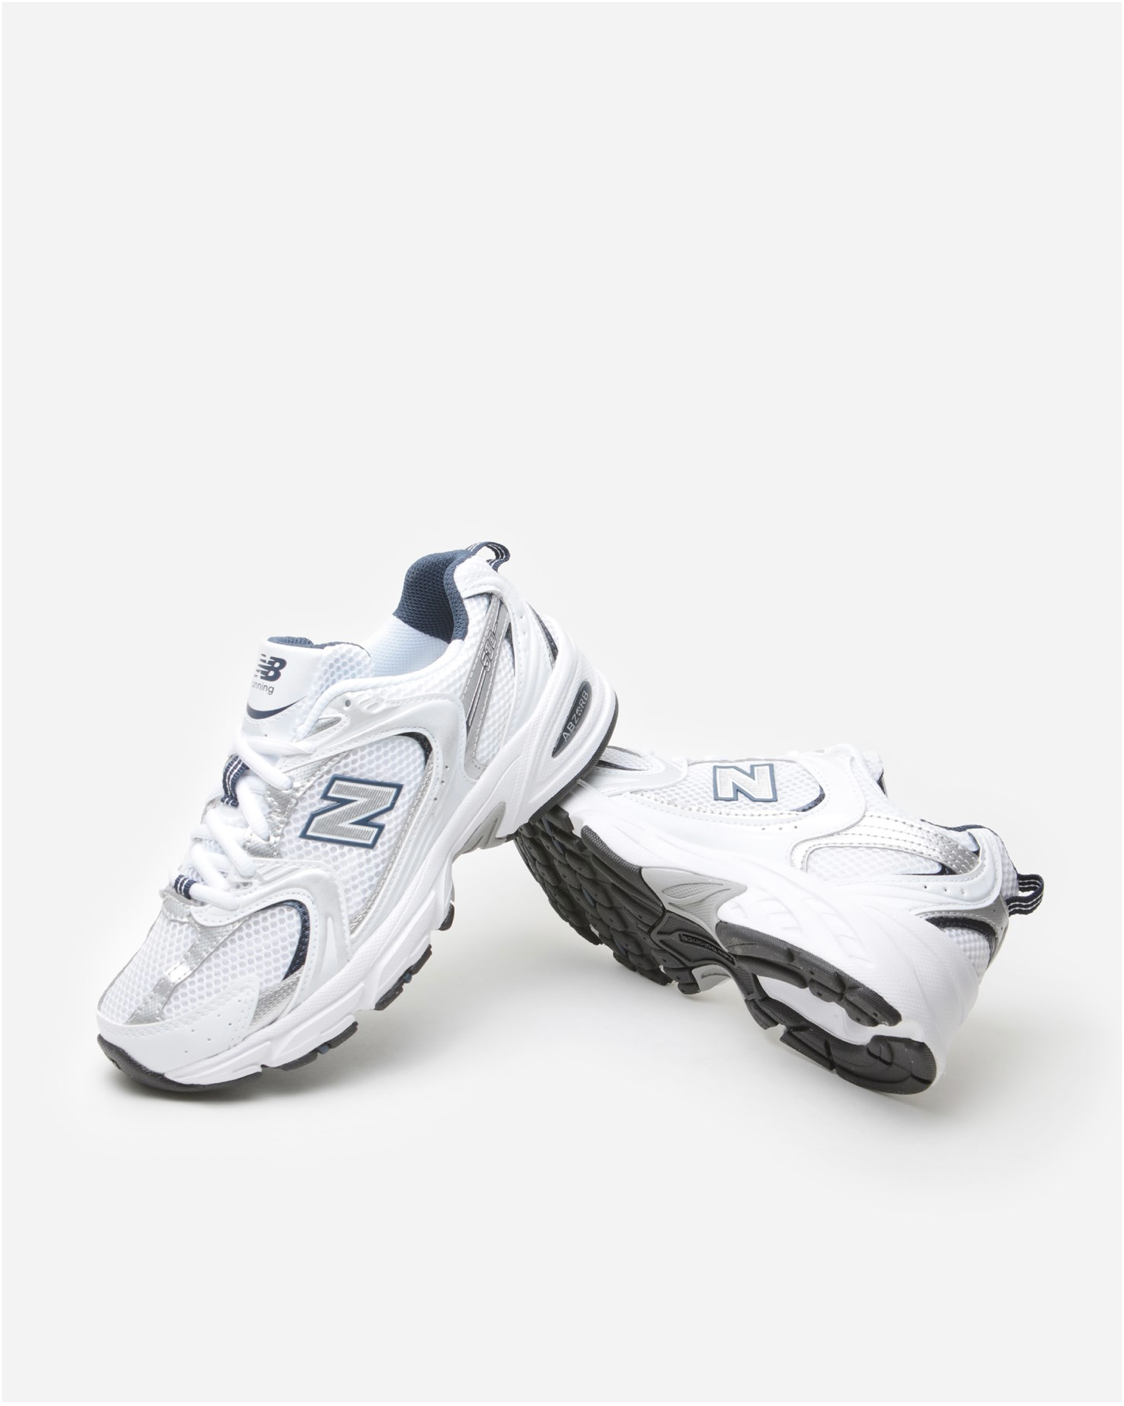 
                  
                    New Balance MR530 SG Unisex Running Sneaker
                  
                